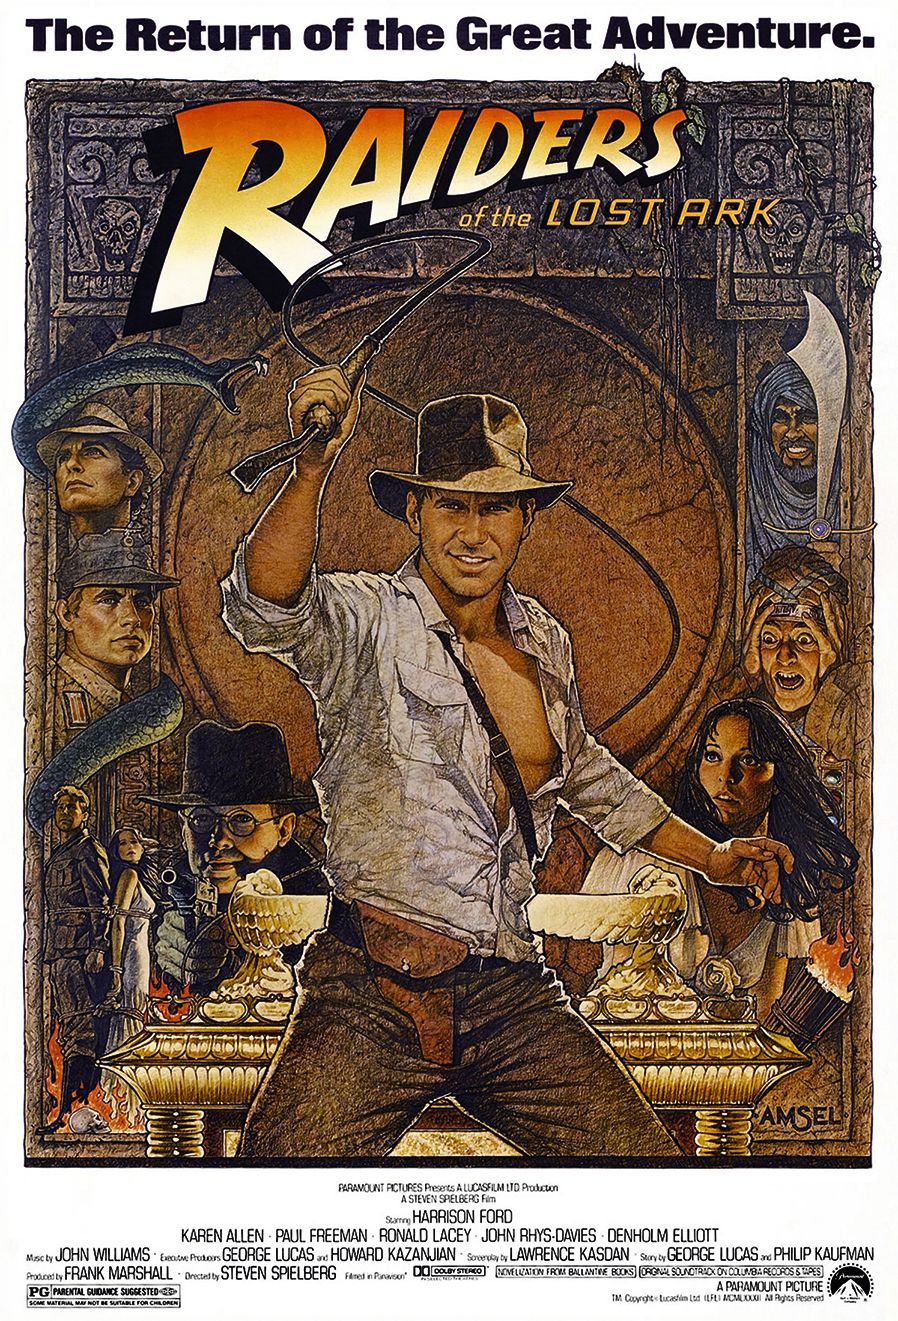 Richard Amsels Plakat für die Wiederveröffentlichung von Raiders of the Lost Ark im Jahr 1982 verkörpert den Film perfekt und vermittelt die Charaktere, die Intrigen und die Peitsche